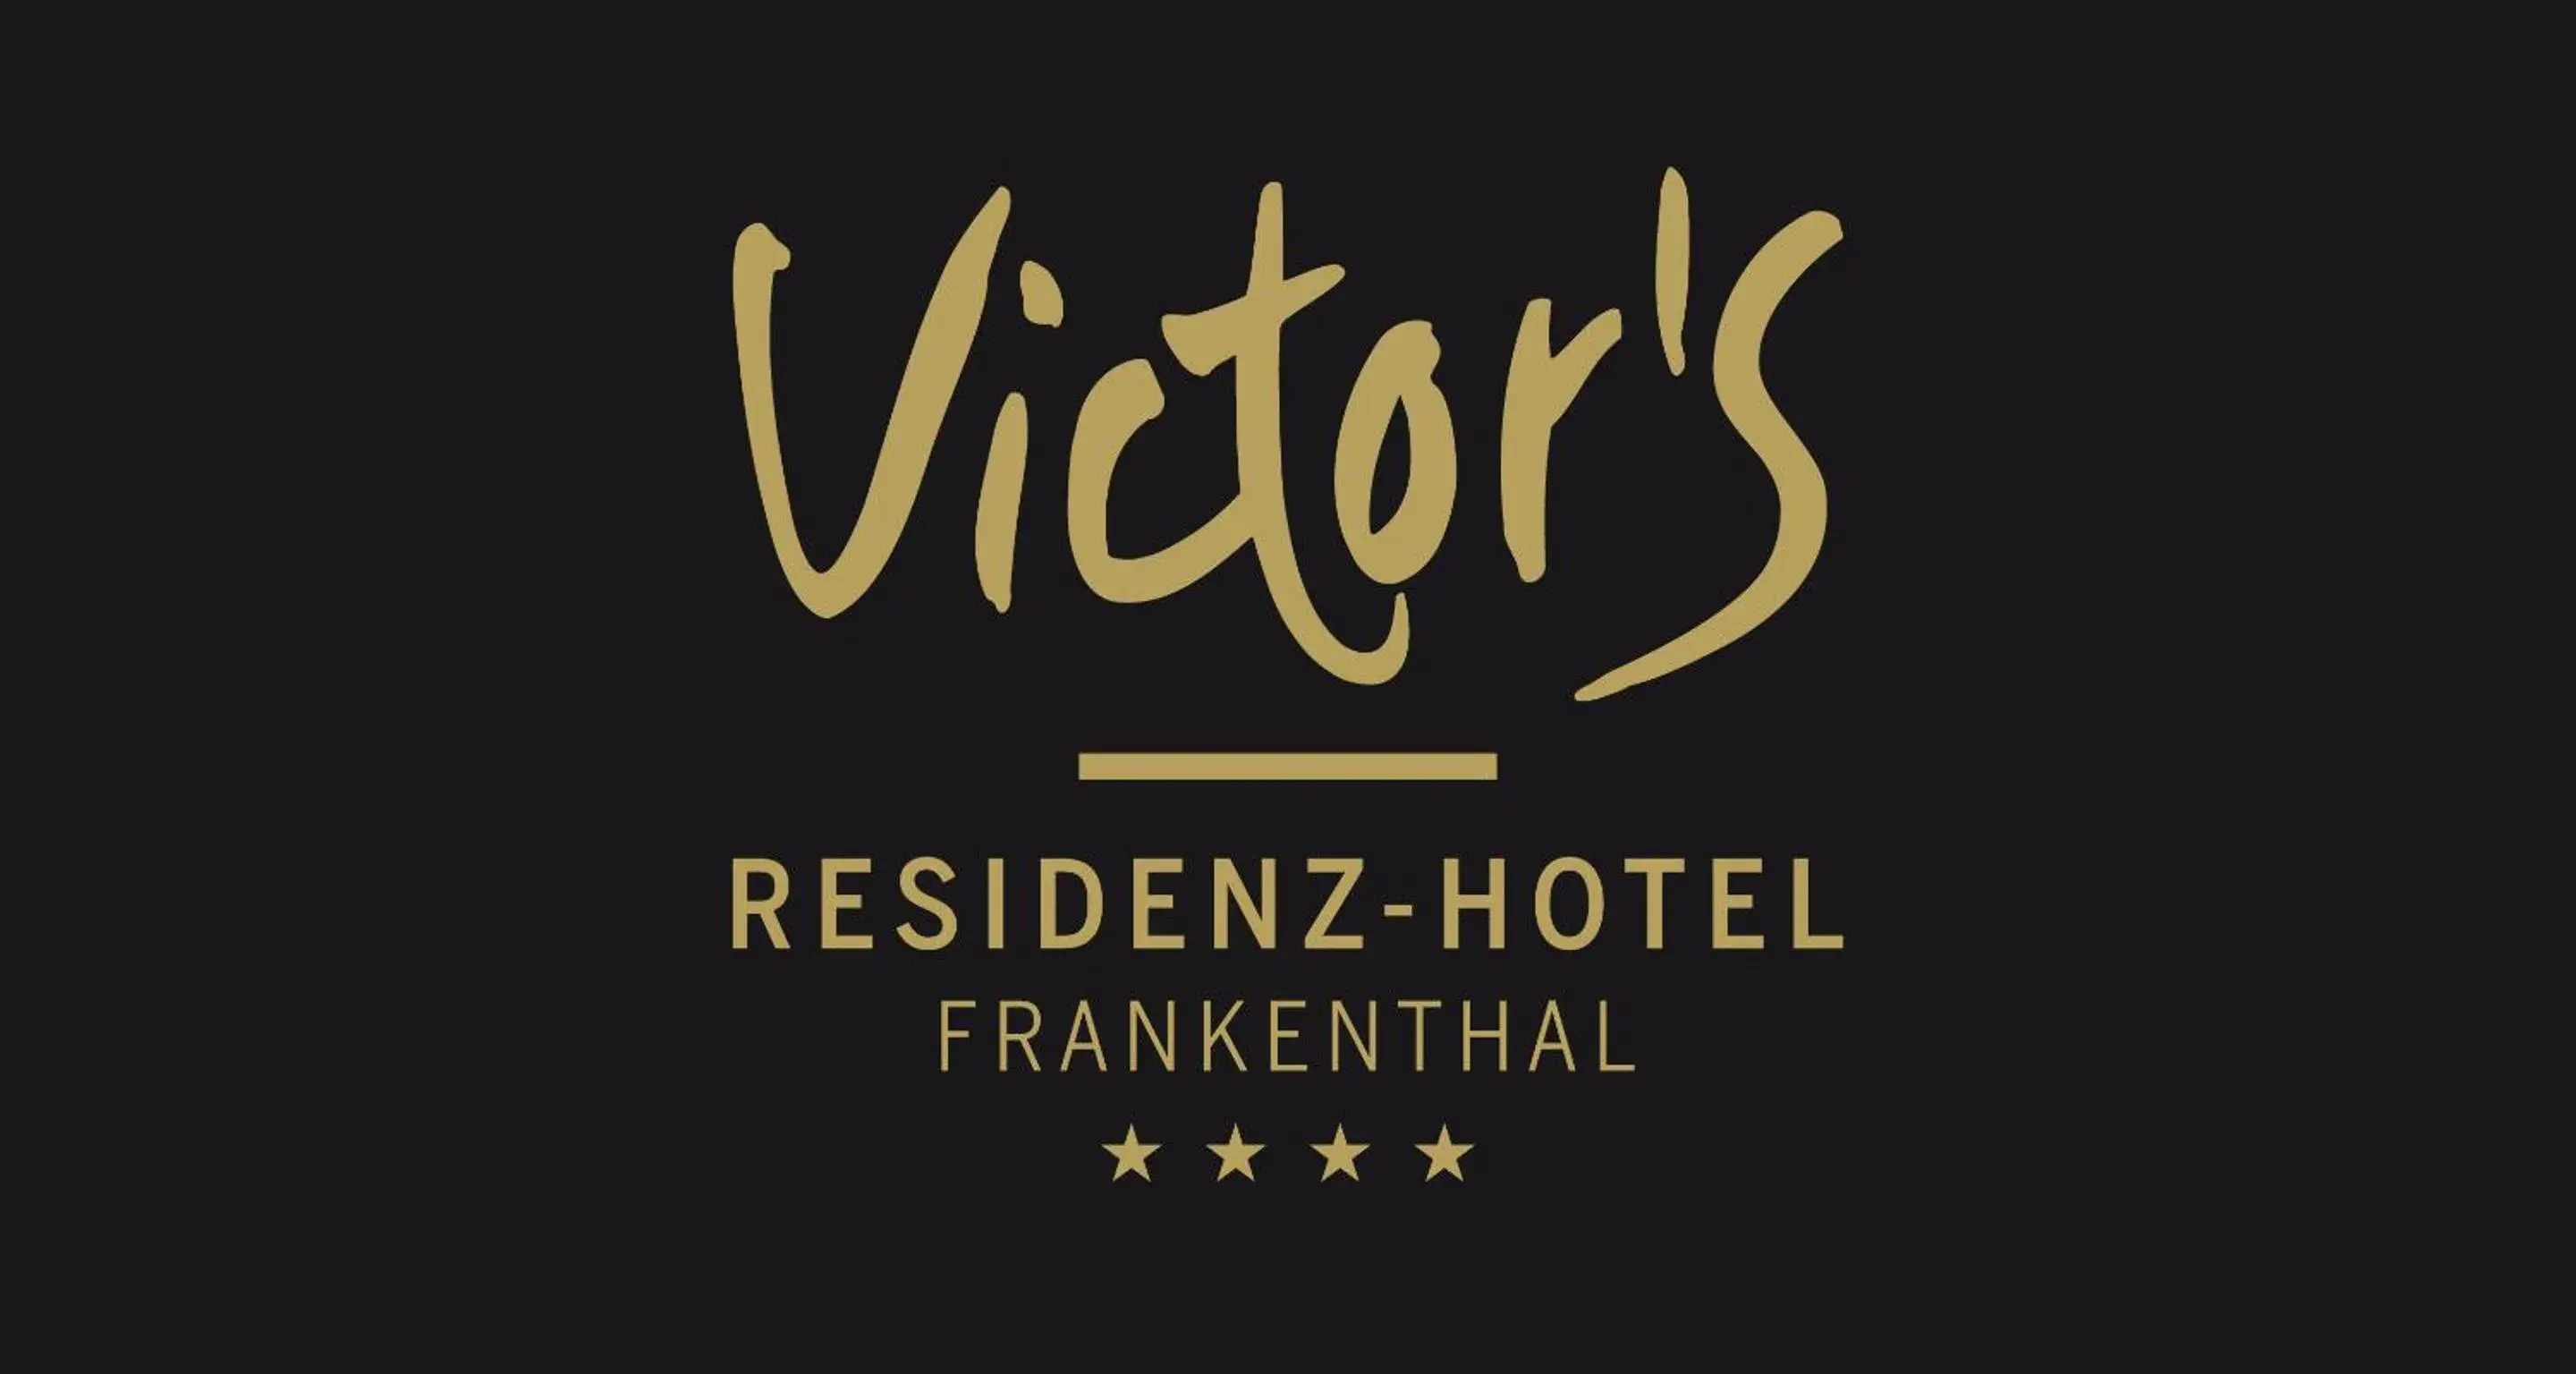 Property logo or sign, Property Logo/Sign in Victor's Residenz-Hotel Frankenthal